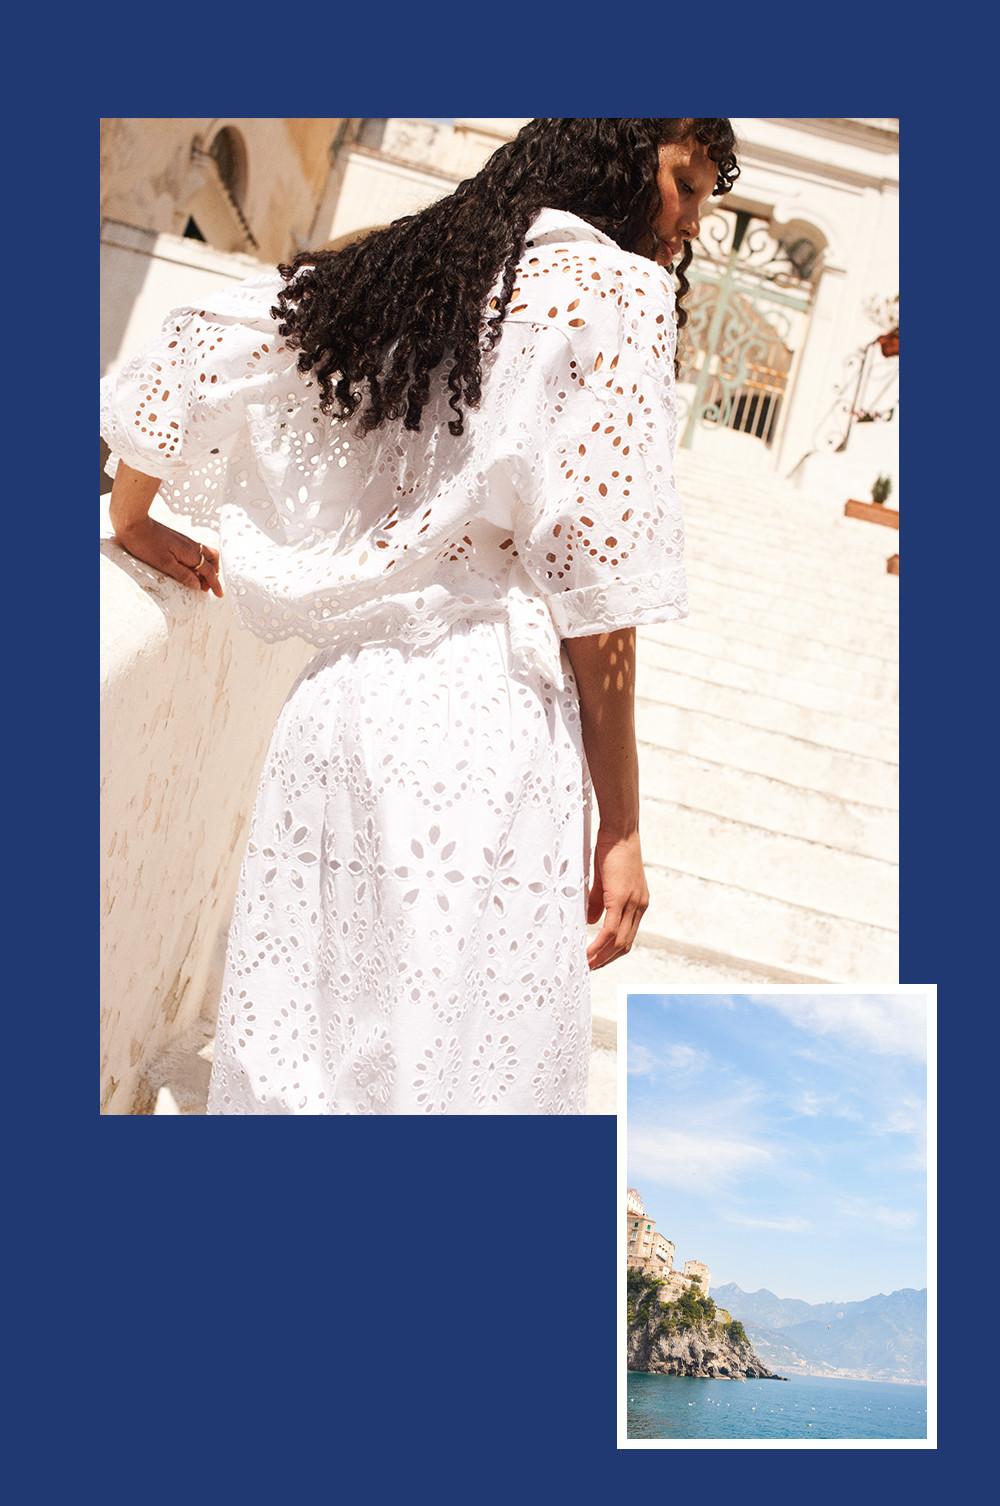 Koláž se ženou v bílém krajkovém topu, košili a sukni a obrázek pláže